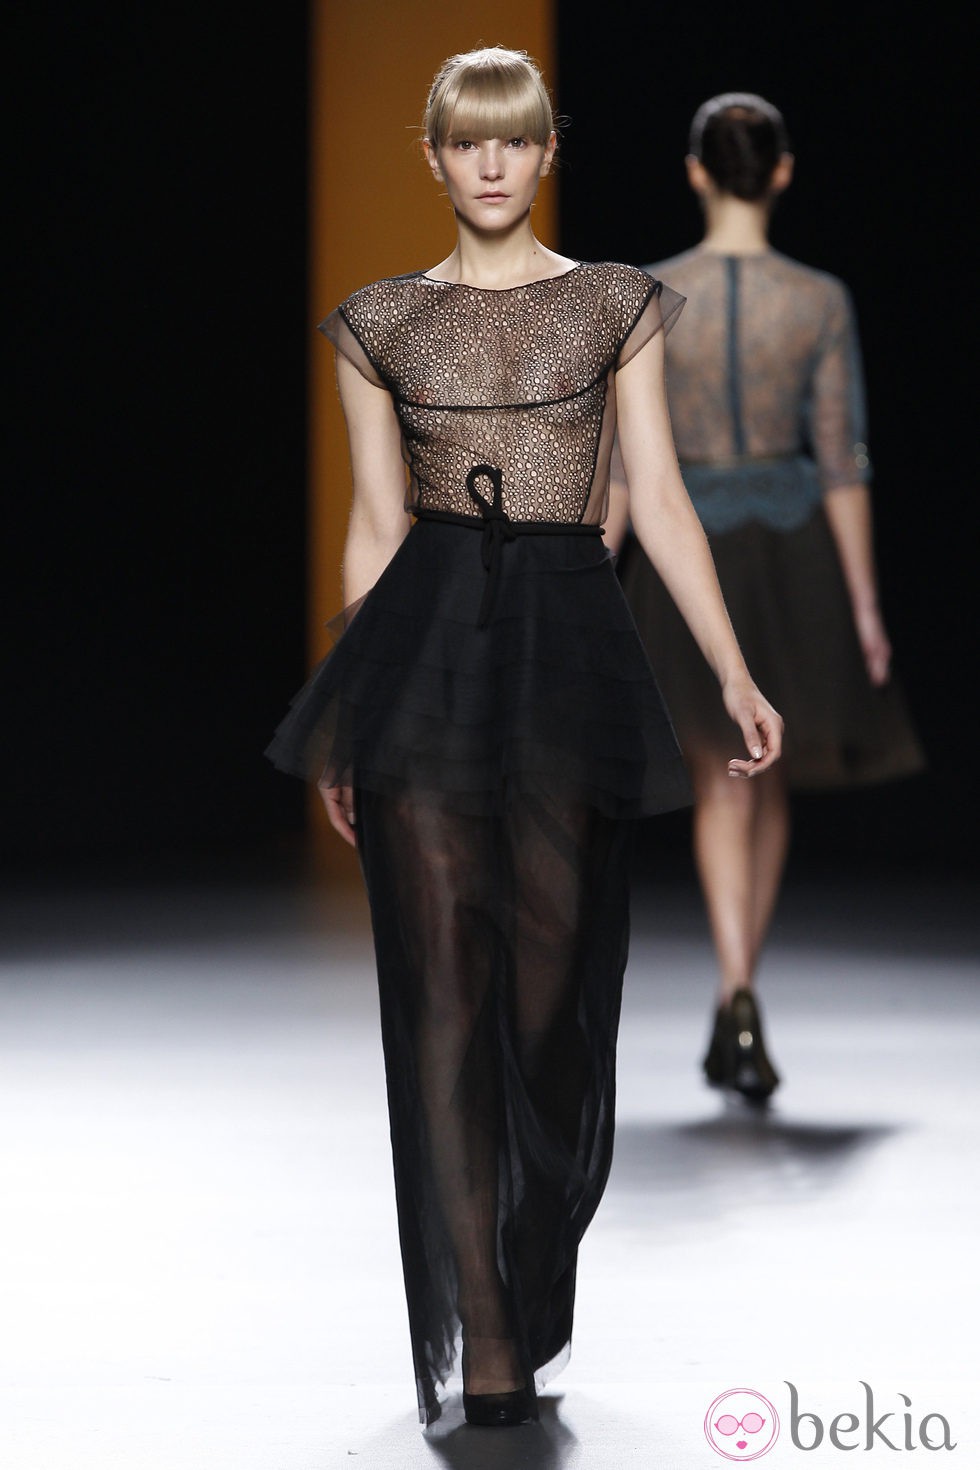 Vestido negro transparente de la colección otoño/invierno 2012/2013 de Juanjo Oliva